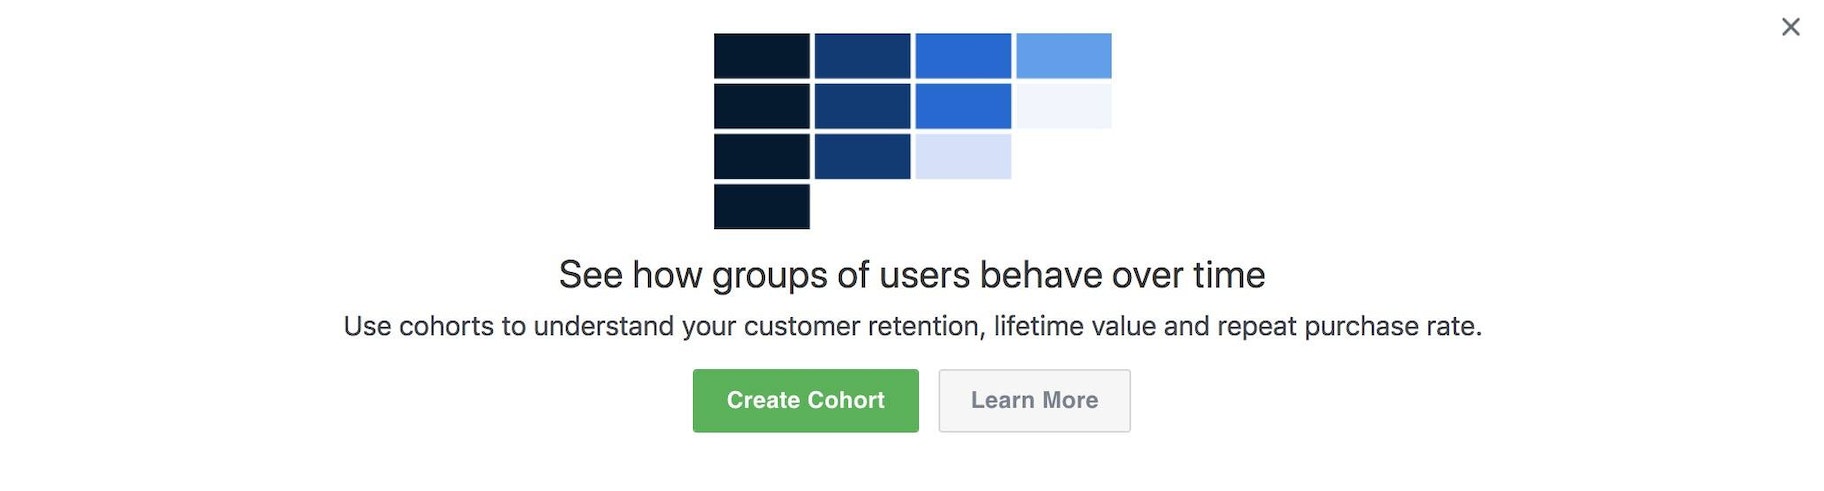 在Facebook分析中创建群组